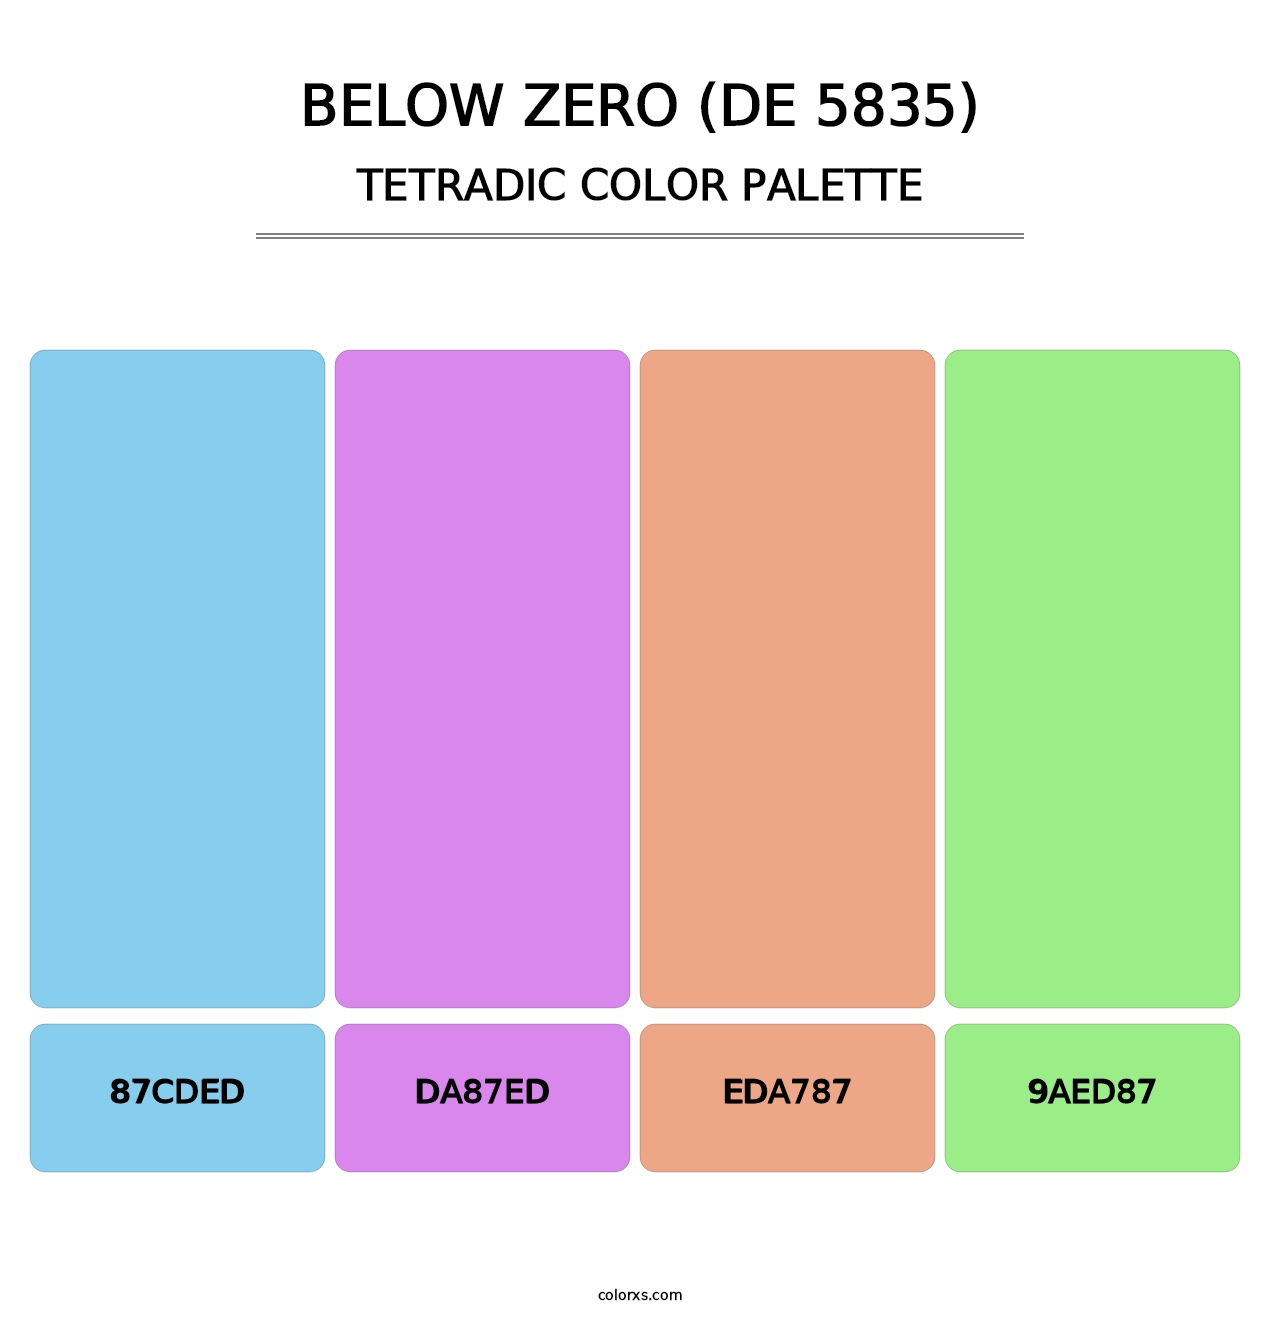 Below Zero (DE 5835) - Tetradic Color Palette